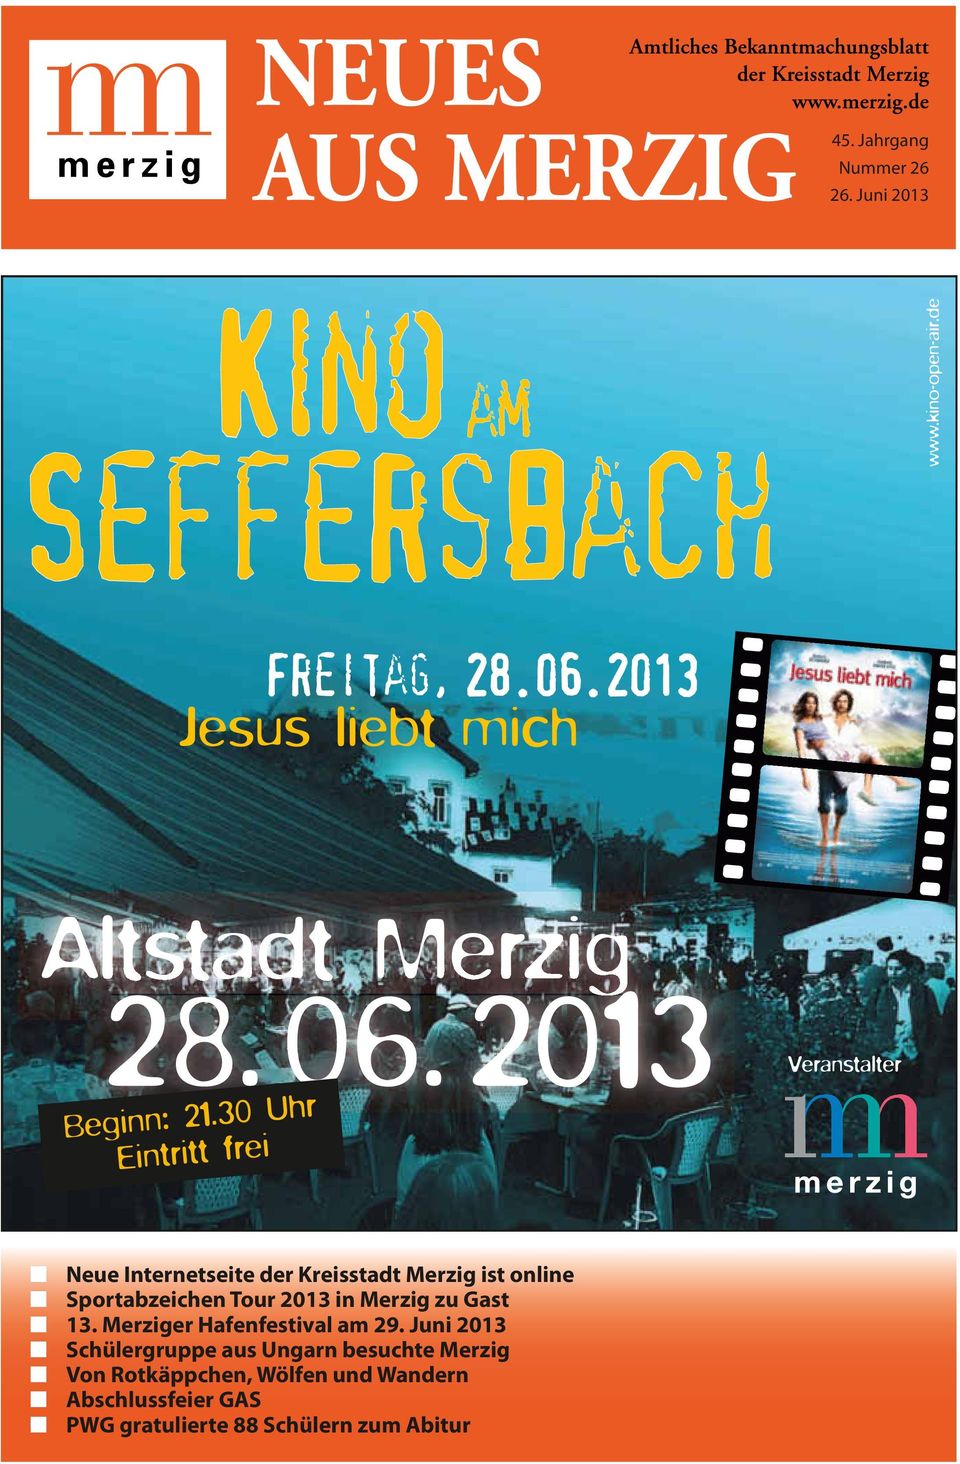 Tour 2013 in Merzig zu Gast 13. Merziger Hafenfestival am 29.